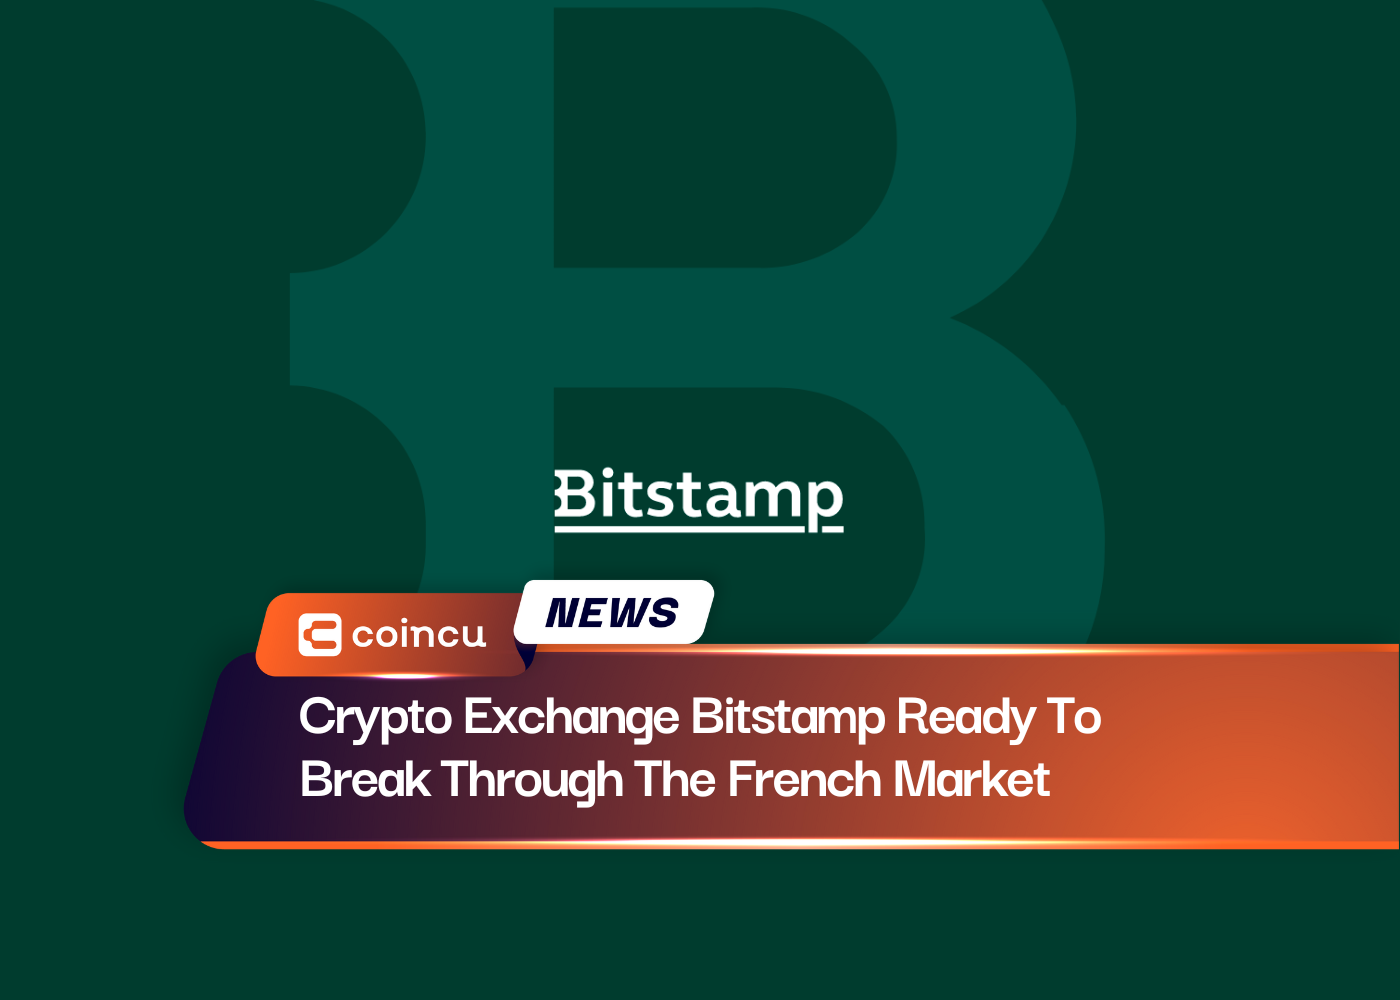 क्रिप्टो एक्सचेंज बिटस्टैम्प फ्रांसीसी बाजार में सेंध लगाने के लिए तैयार है